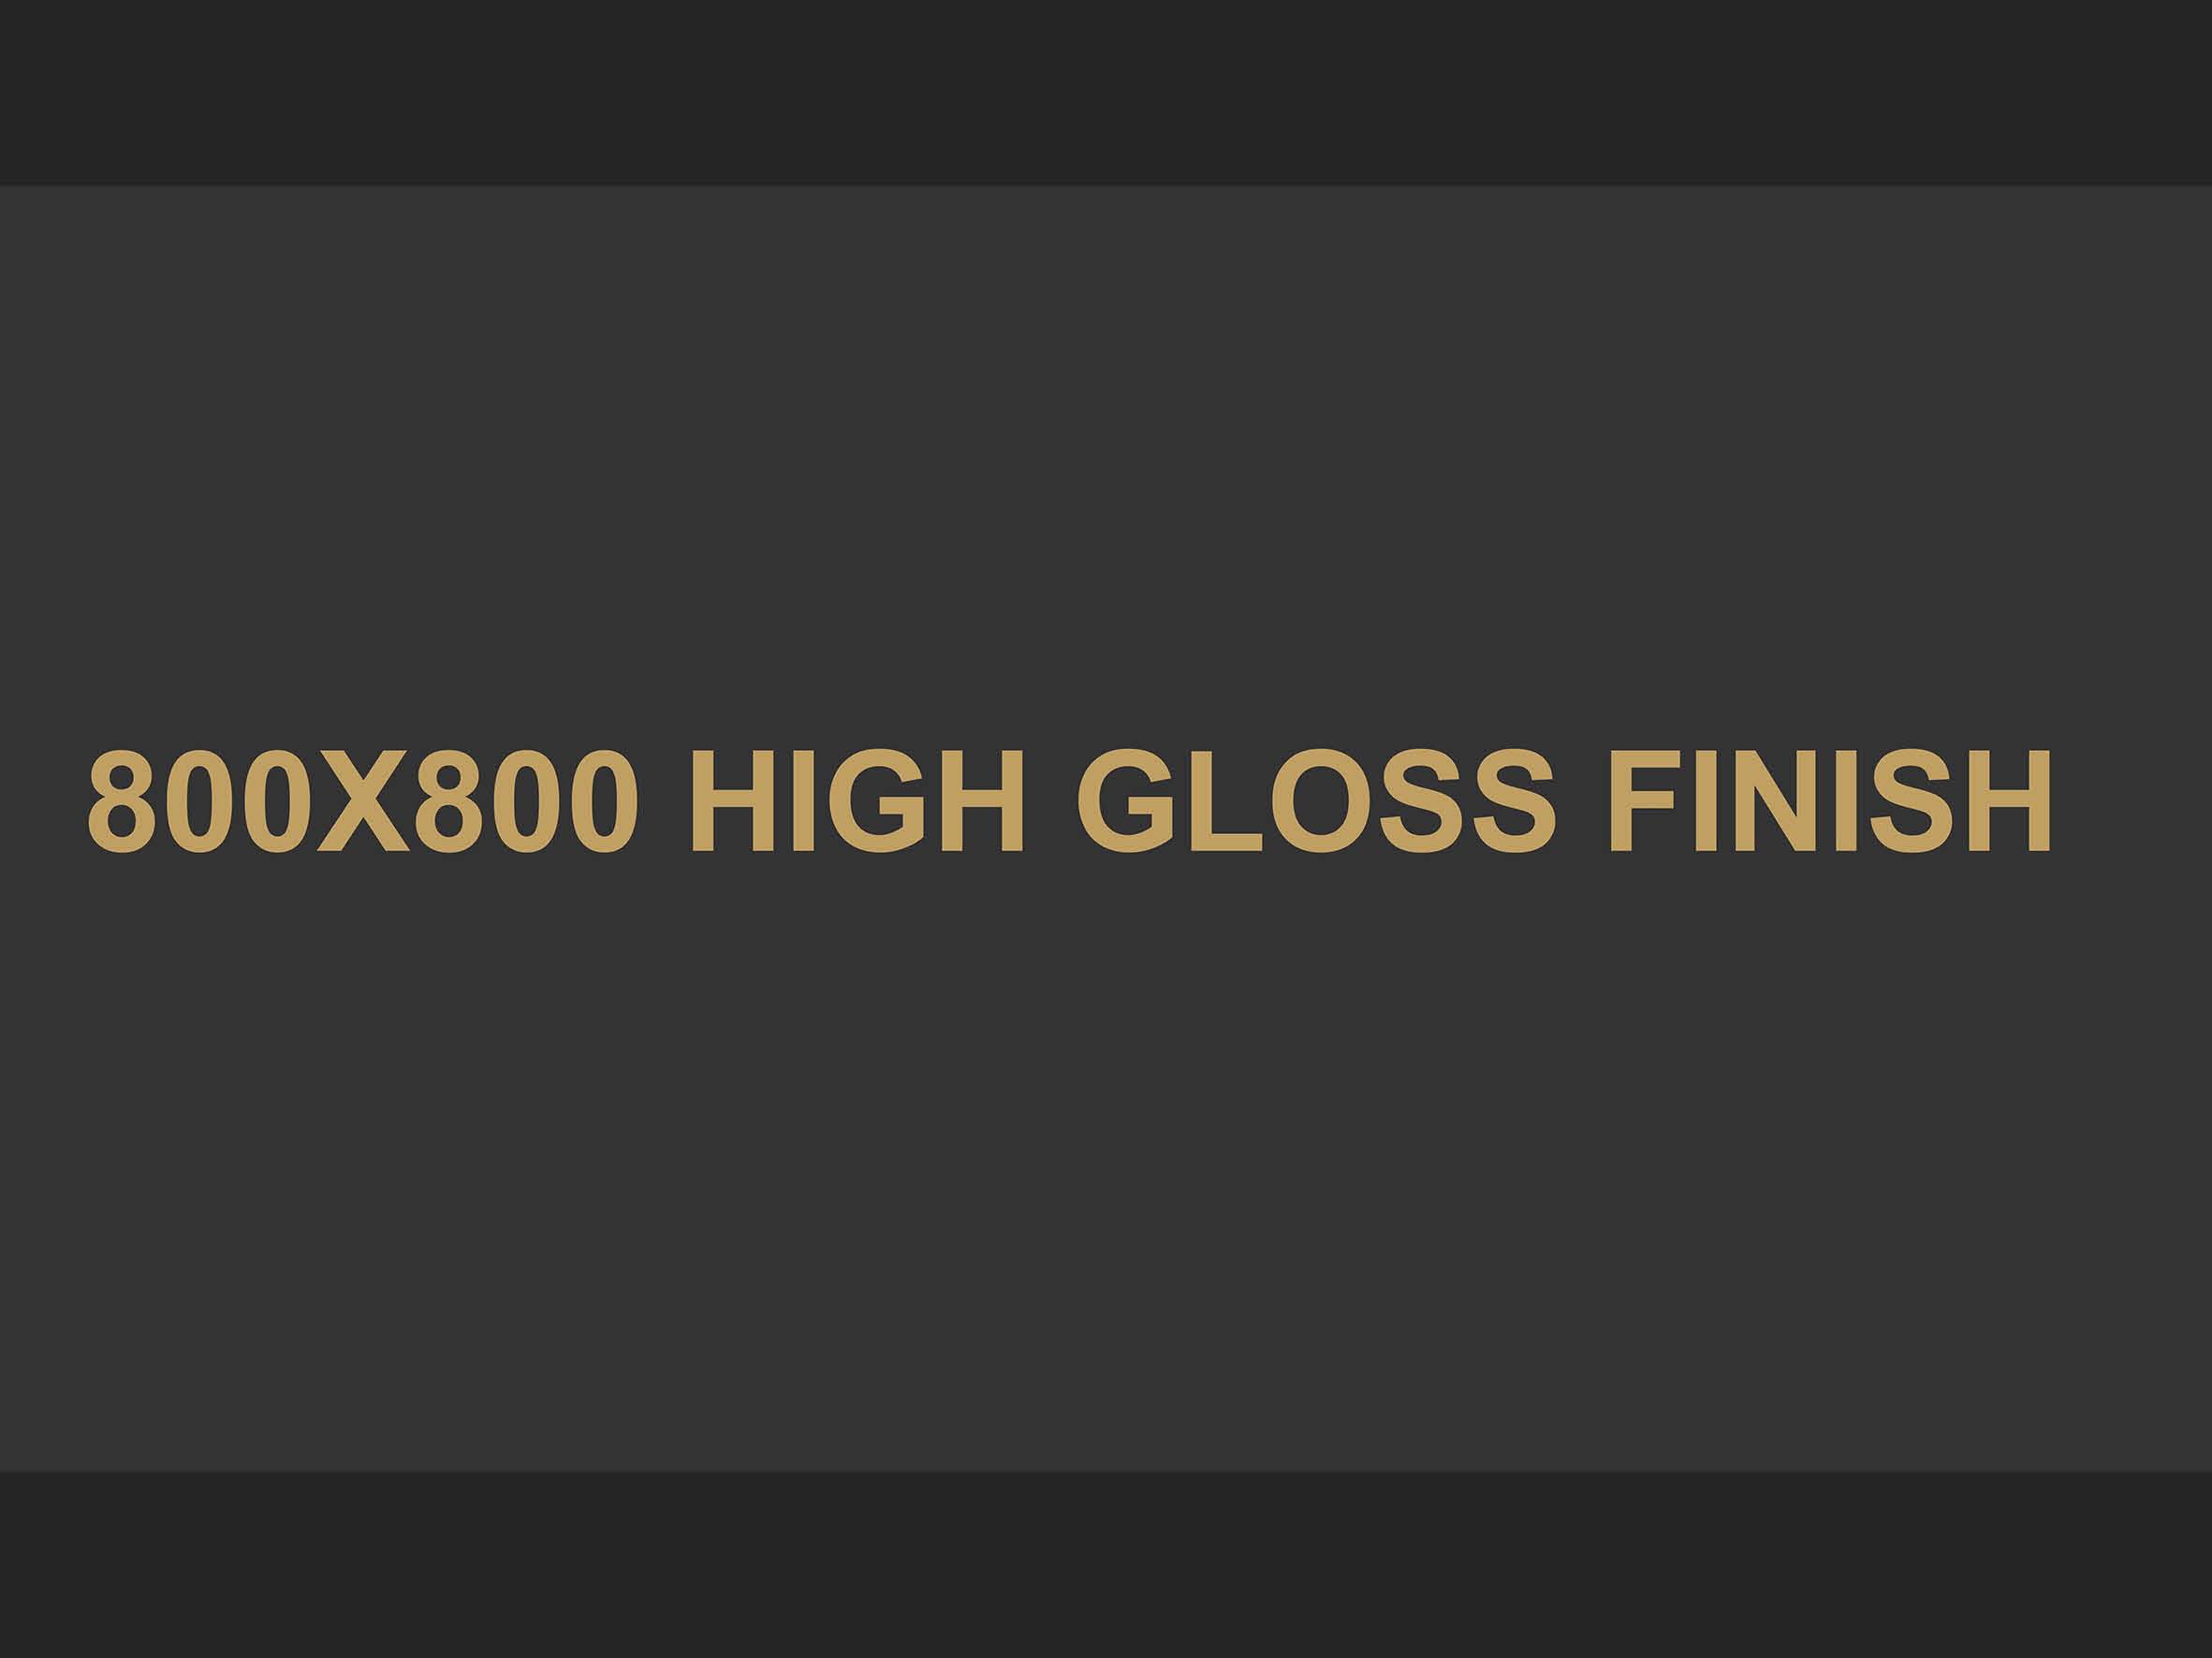 High Gloss_800 x 800